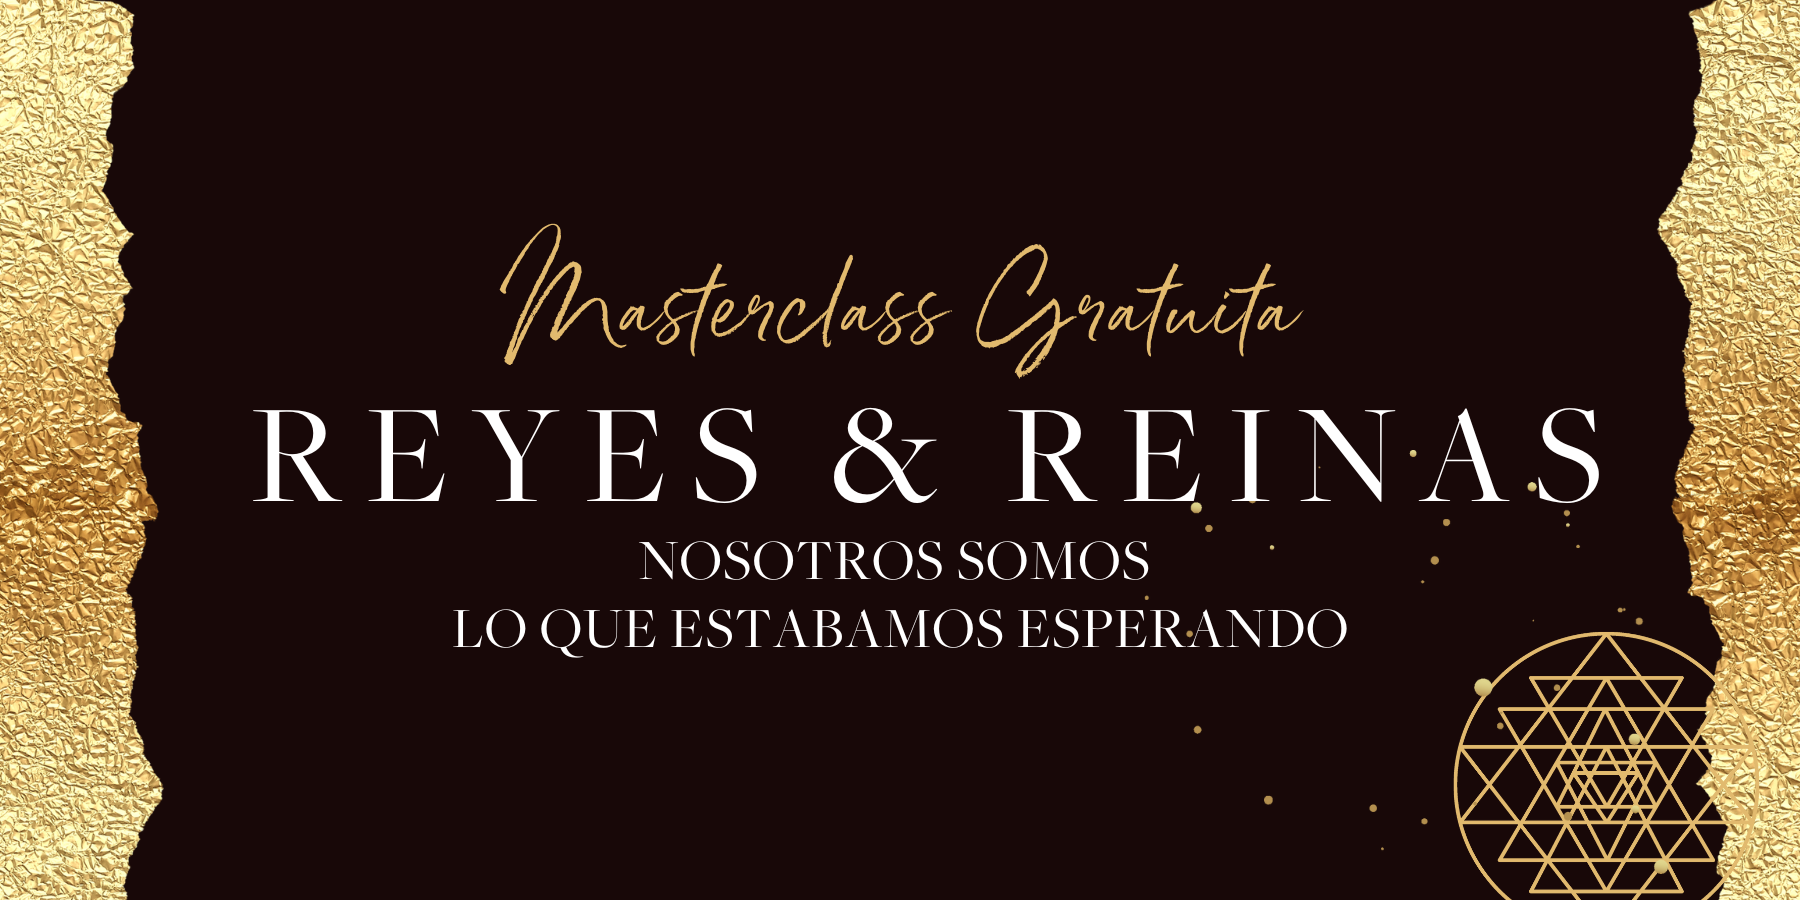 Masterclass Reyes & Reinas: Nosotros somos lo que estábamos esperando